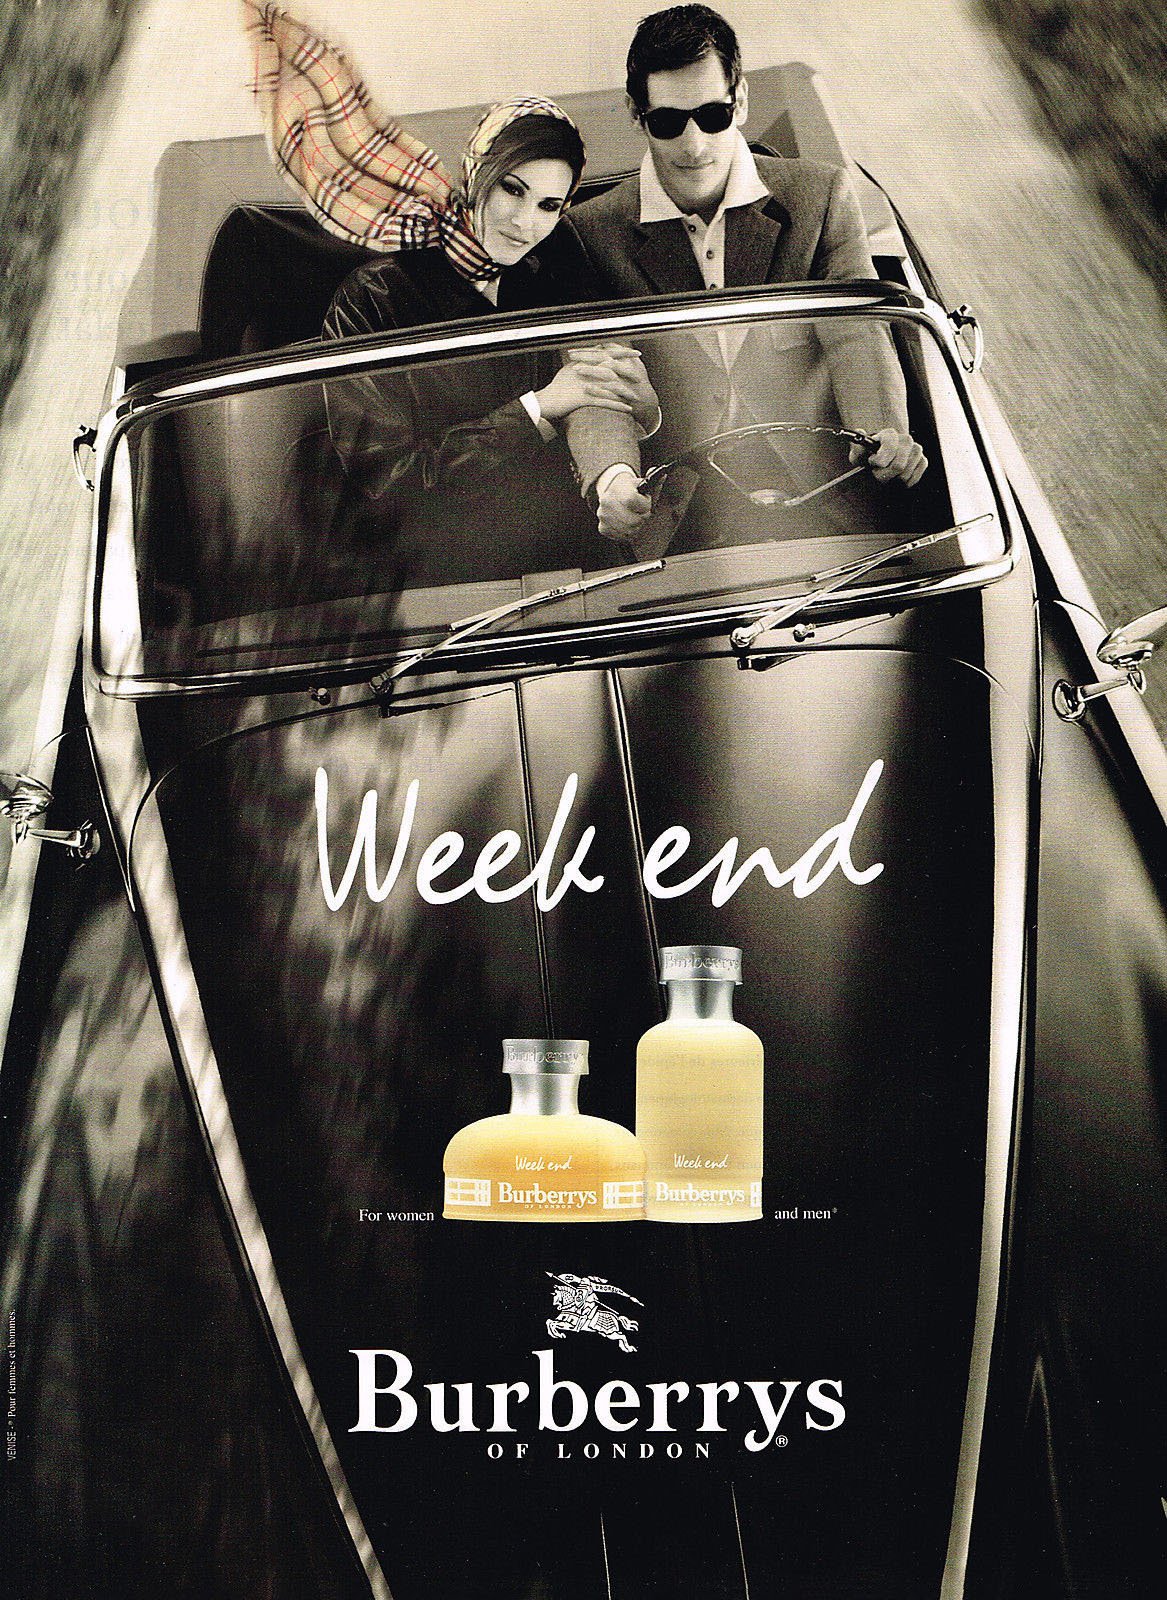 Weekend for Men by Burberry (Eau de Toilette) » Reviews & Perfume Facts